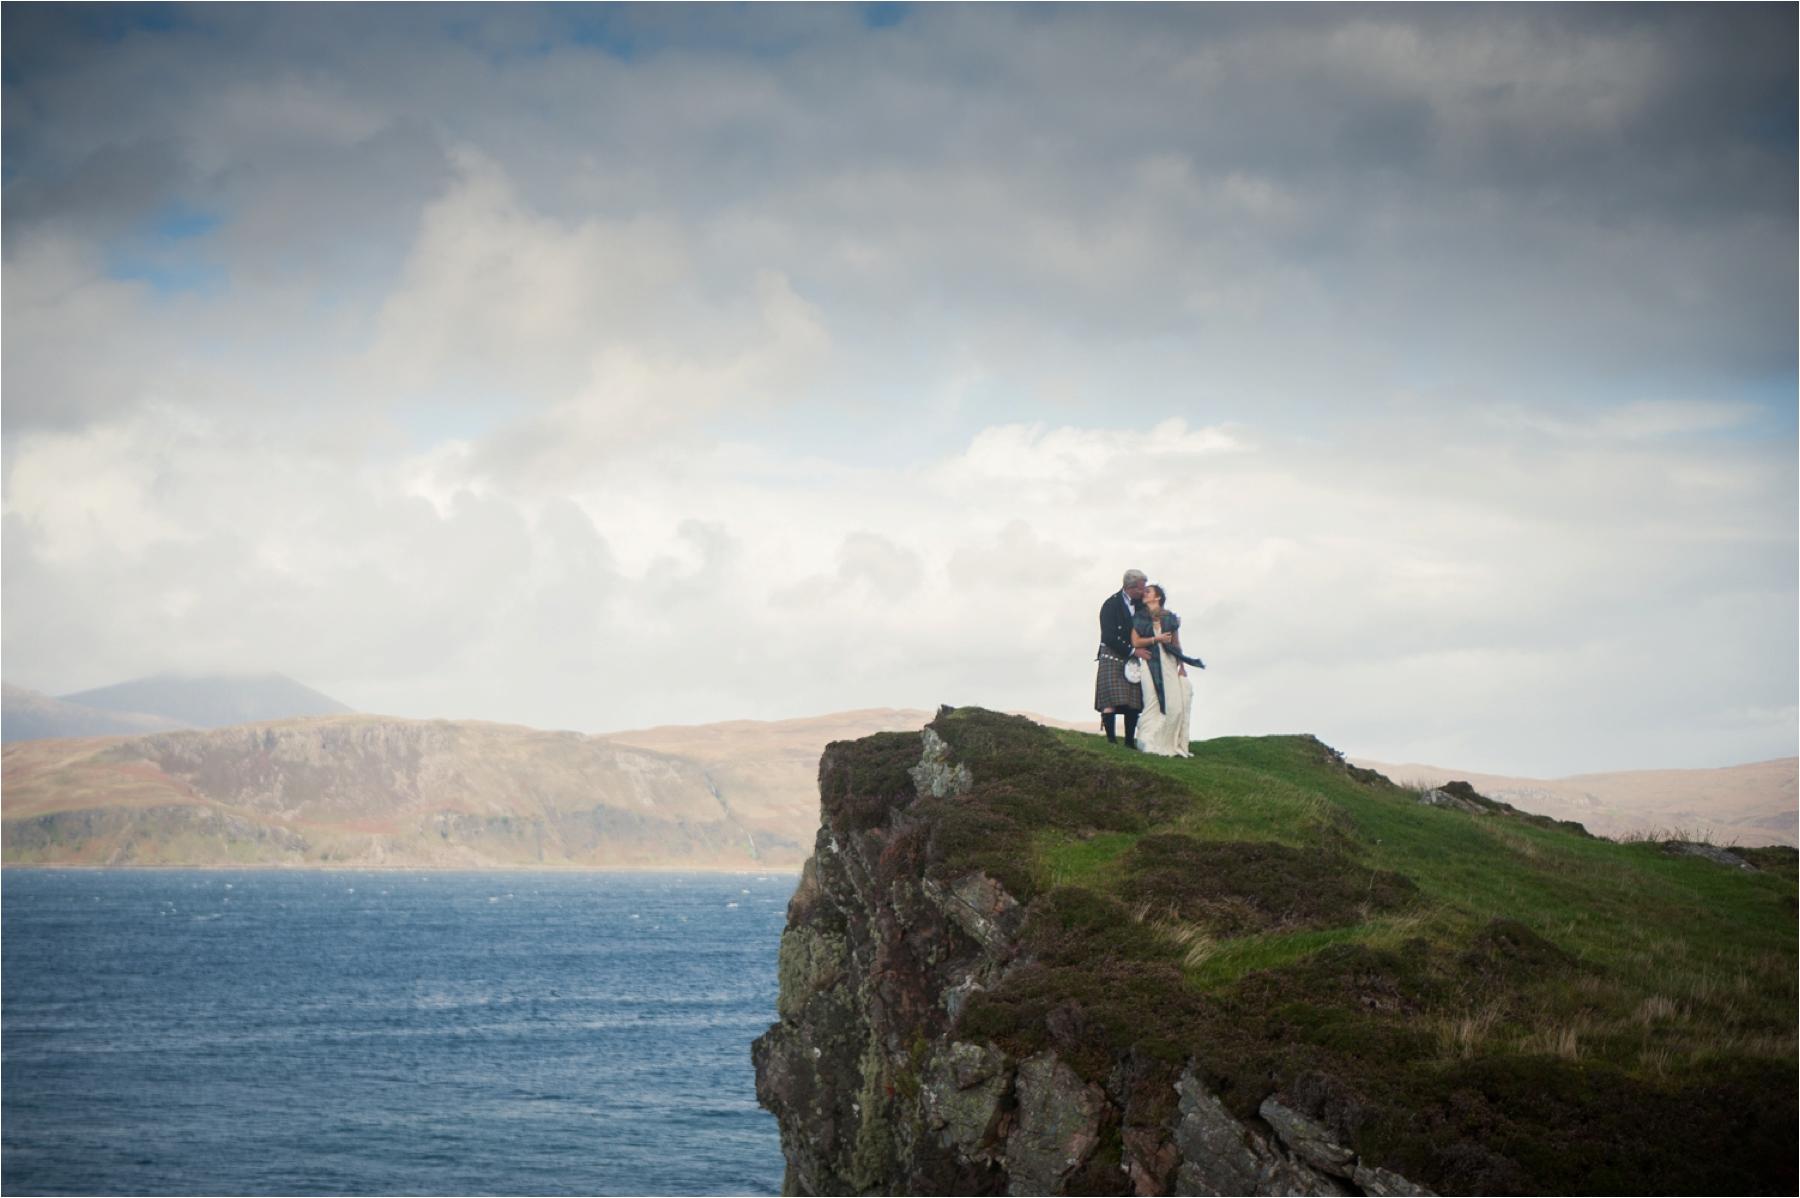 A clifftop wedding photo on the Isle of Skye near Dunscaith Castle. The bride and groom had a humanist ceremony outdoors amidst rain. 